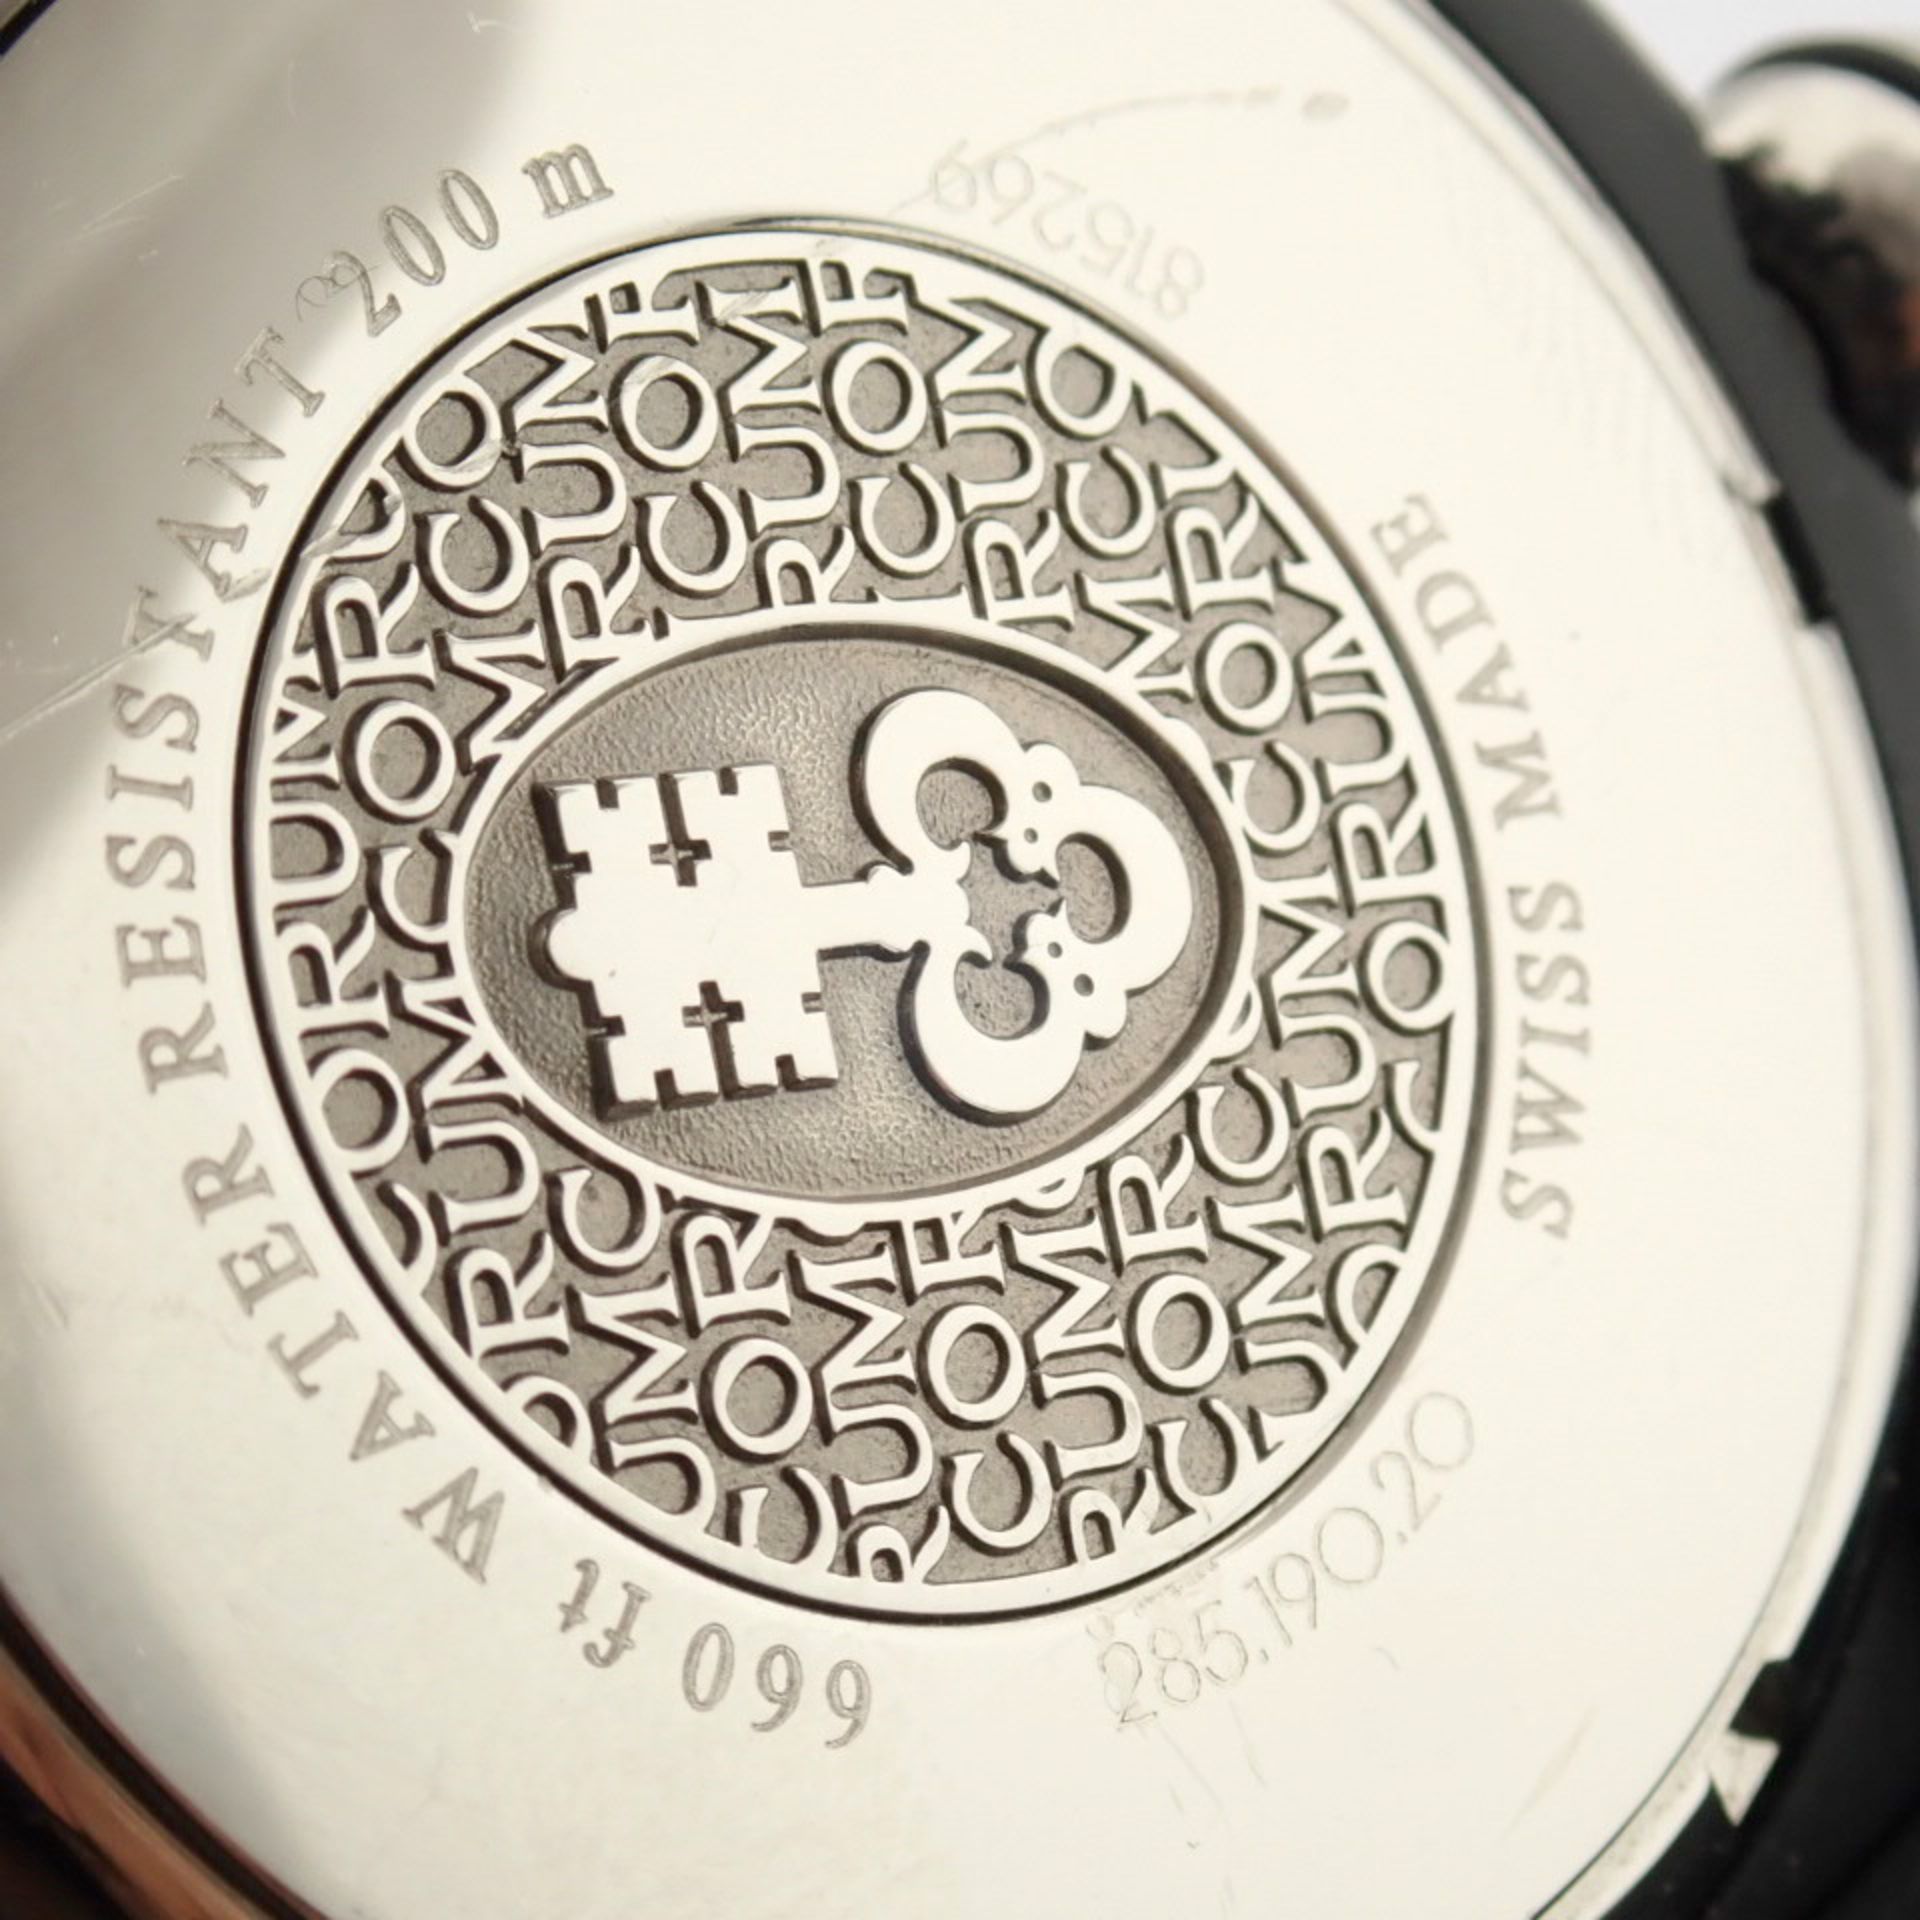 Corum / Midnight Chronograph Diver Taucher - Gentlmen's Steel Wrist Watch - Image 4 of 12